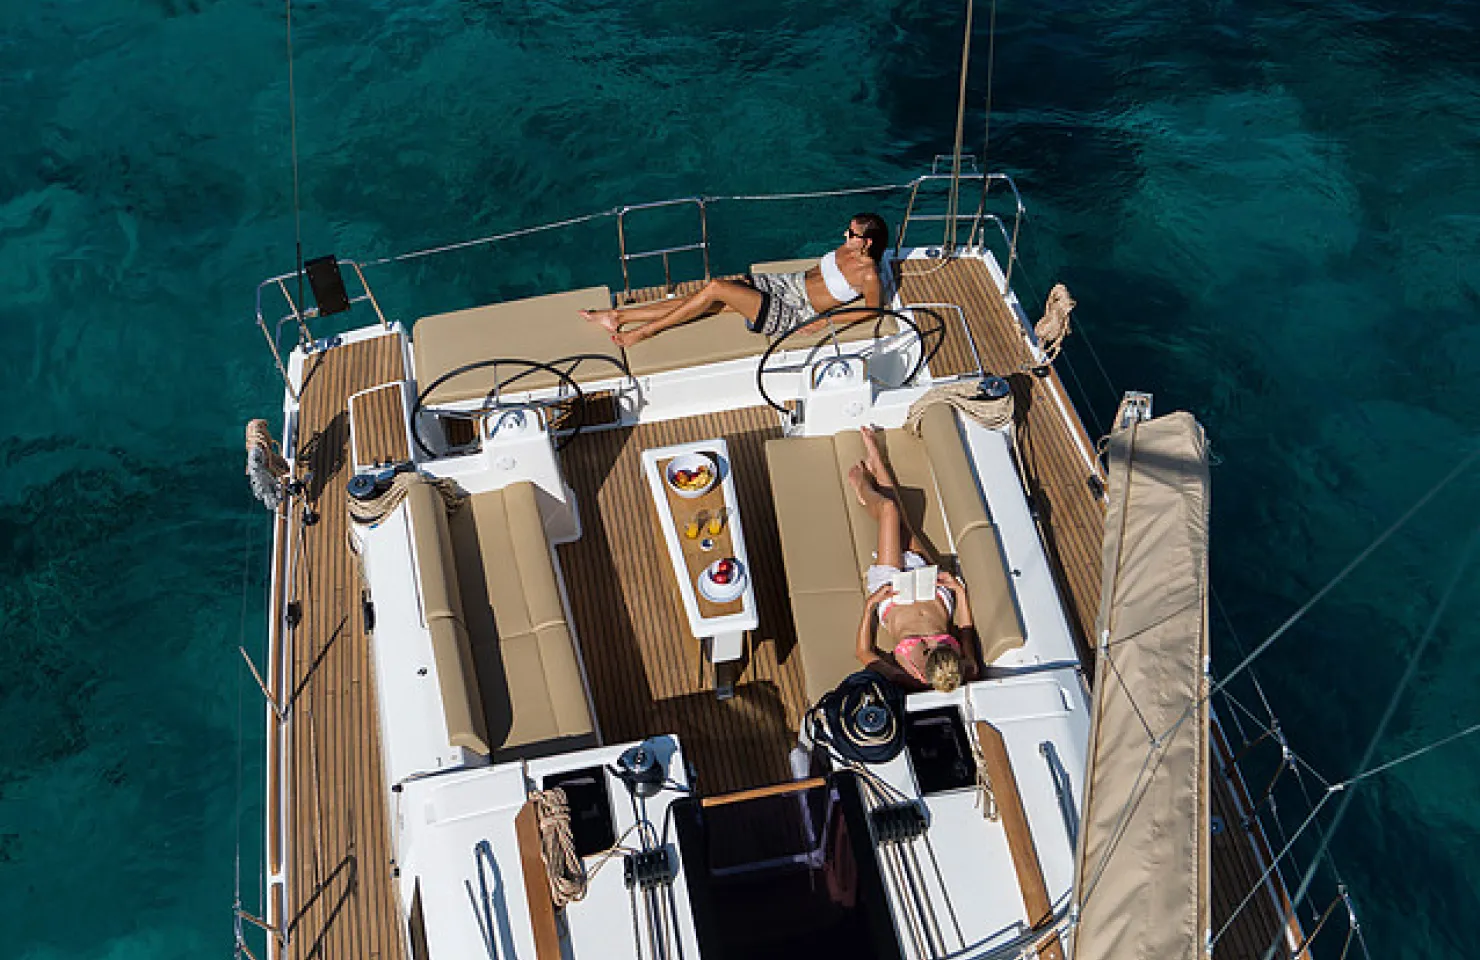 Algarve Yacht Charter - Luxury Boat Trips